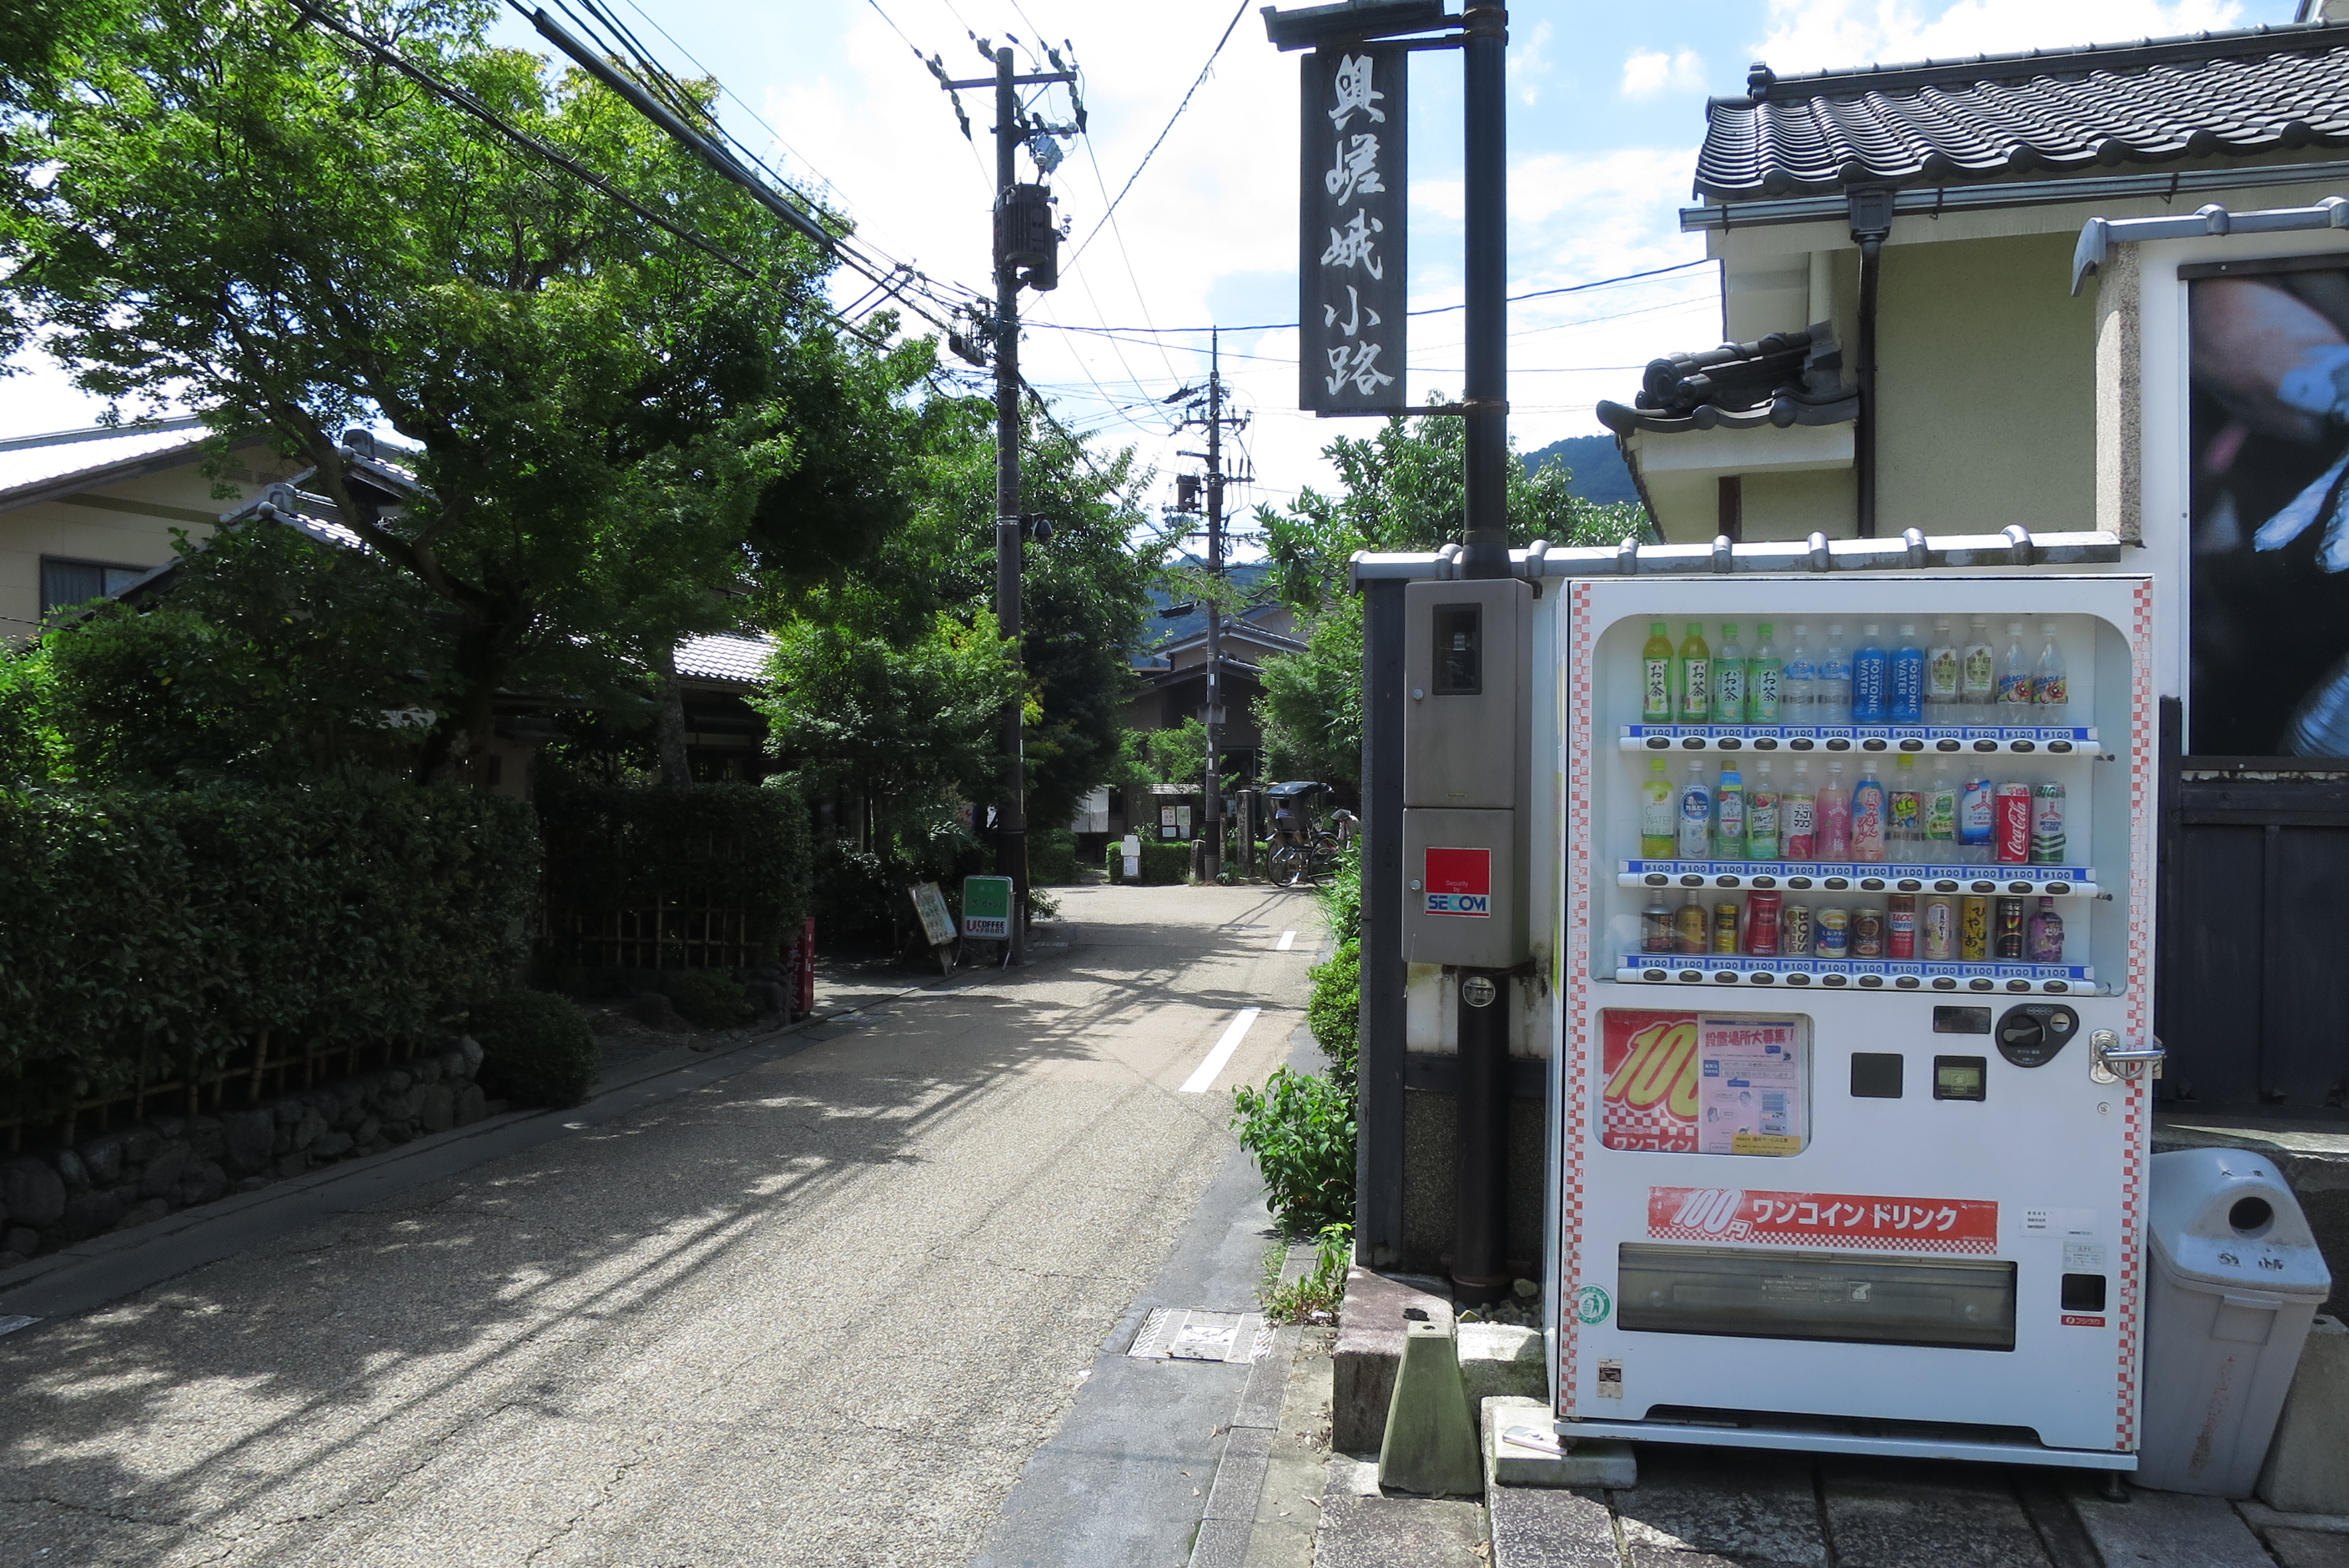 祇王寺近くにある100円の自動販売機。暑い夏には助かりますね。自販機の横に椅子があり、少し休憩。